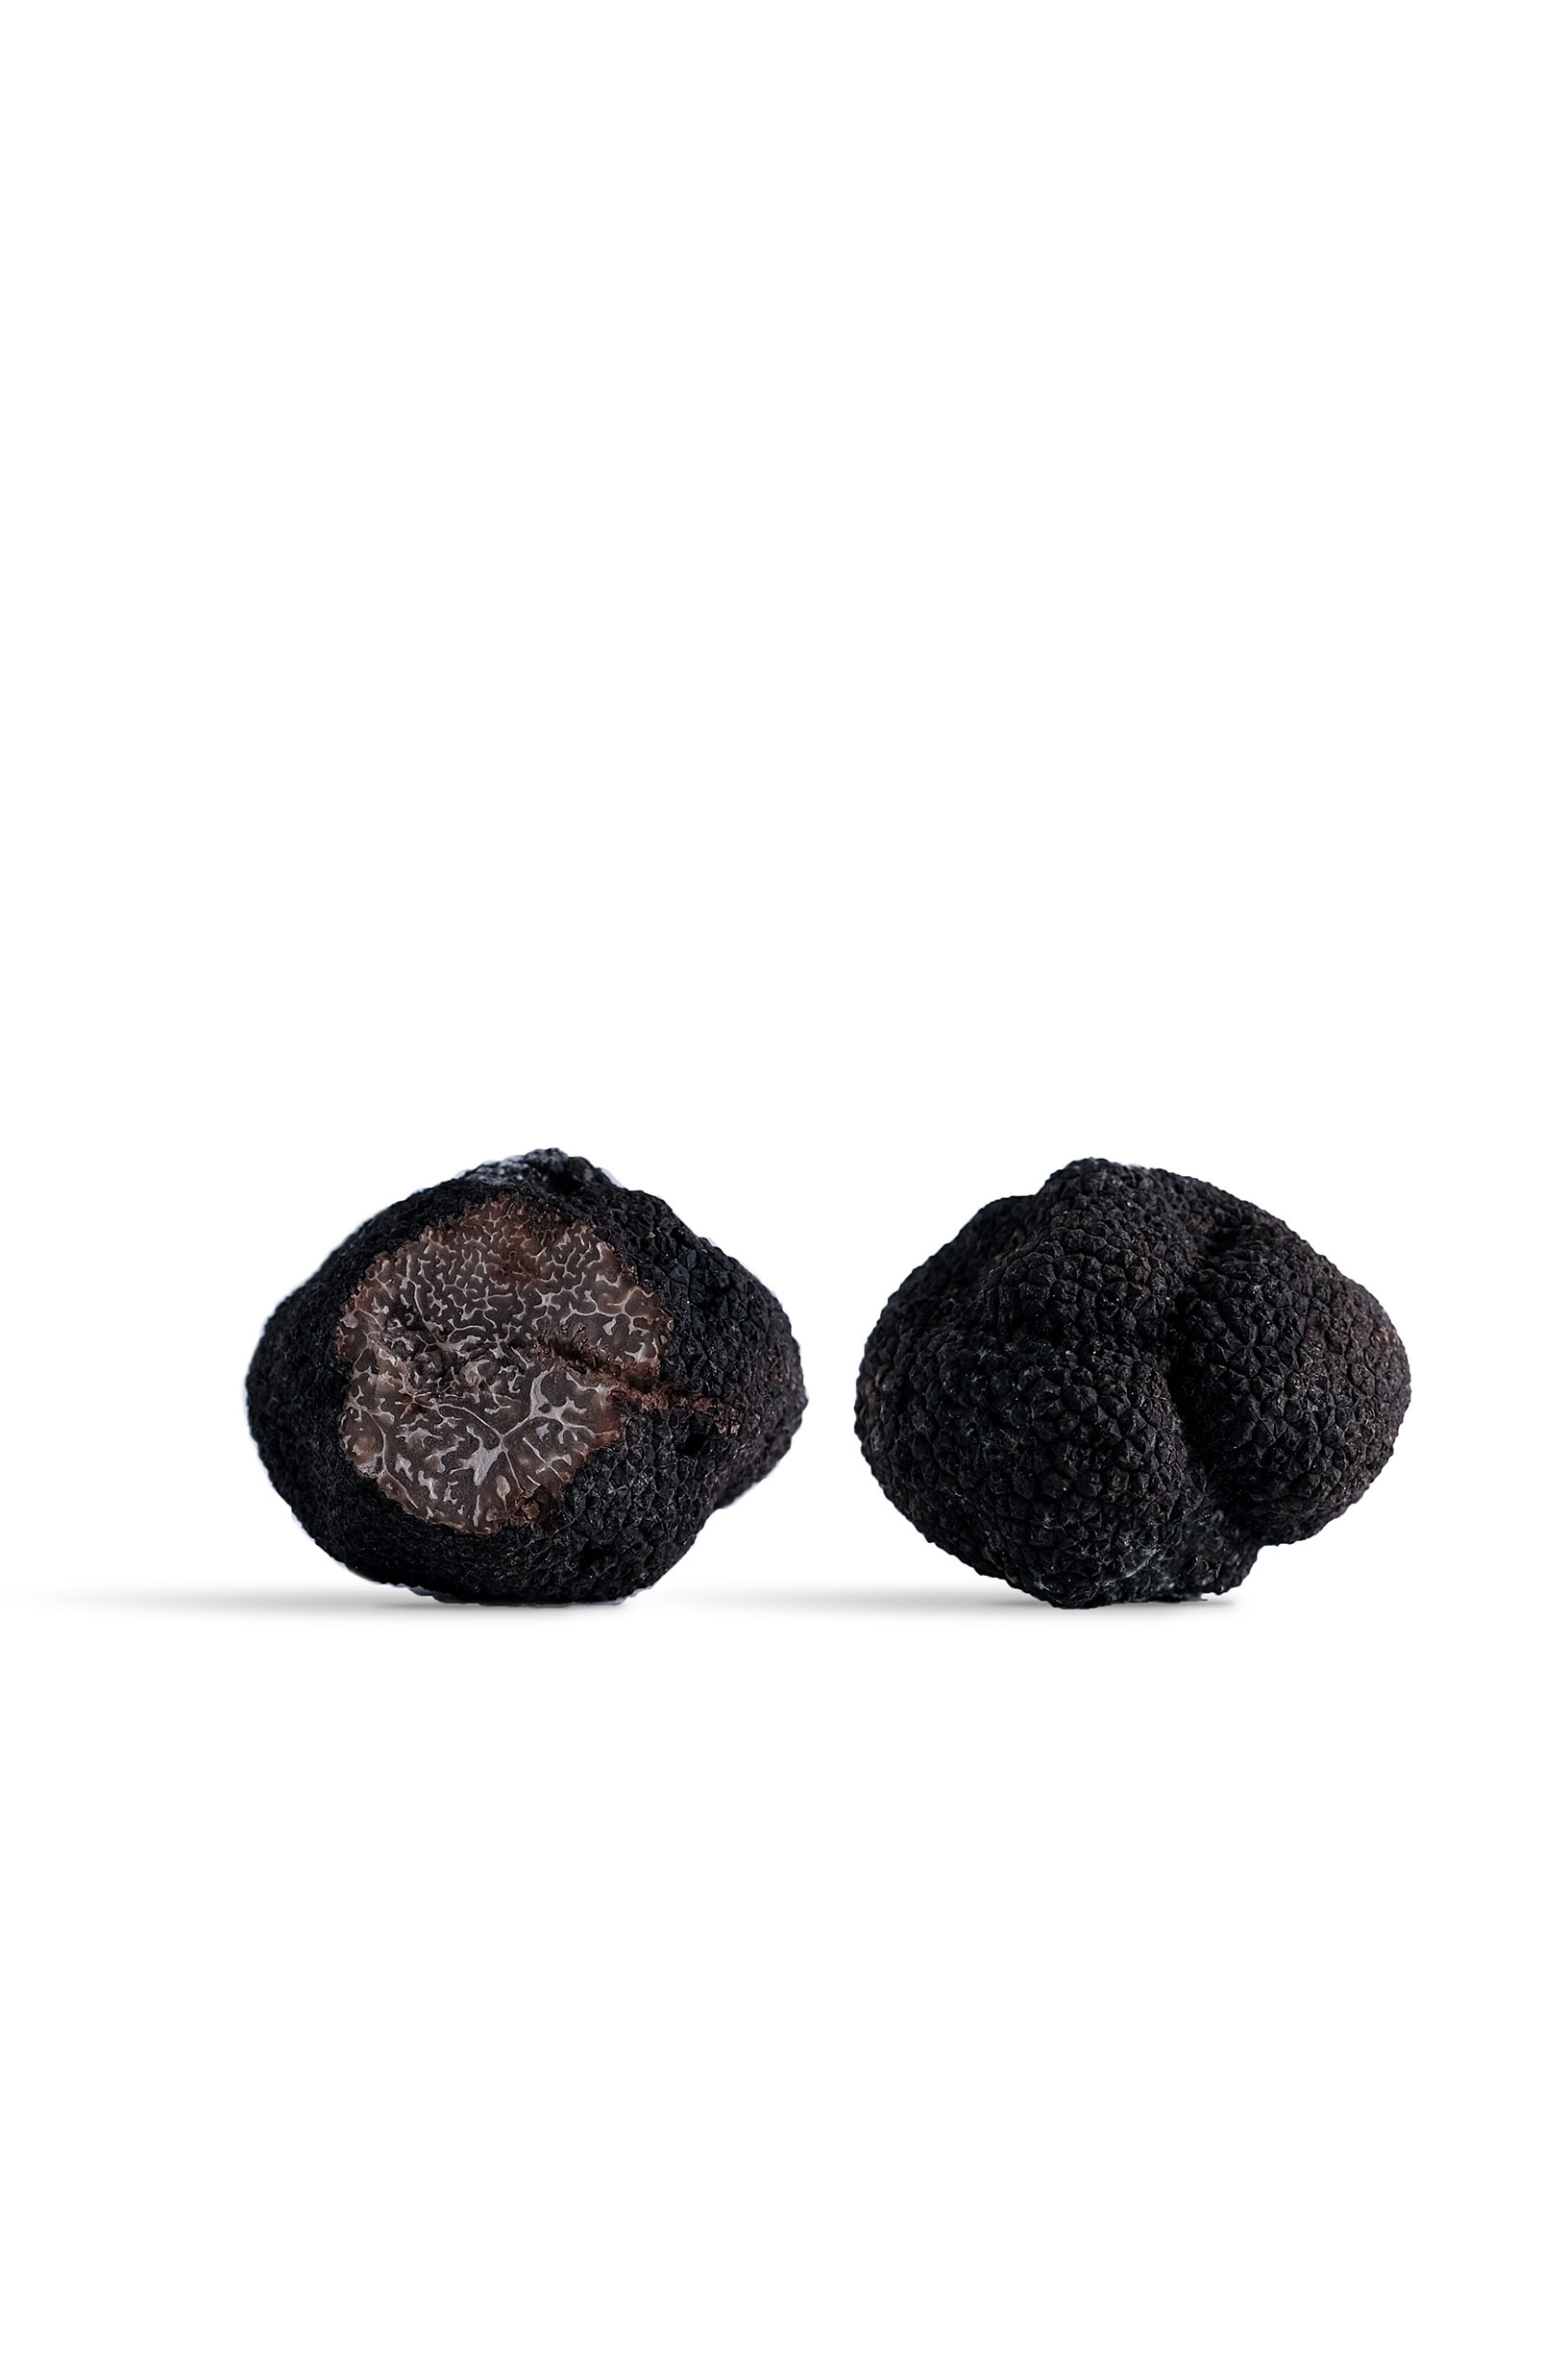 Lamelles de truffe noire du Périgord séchée - direct producteur